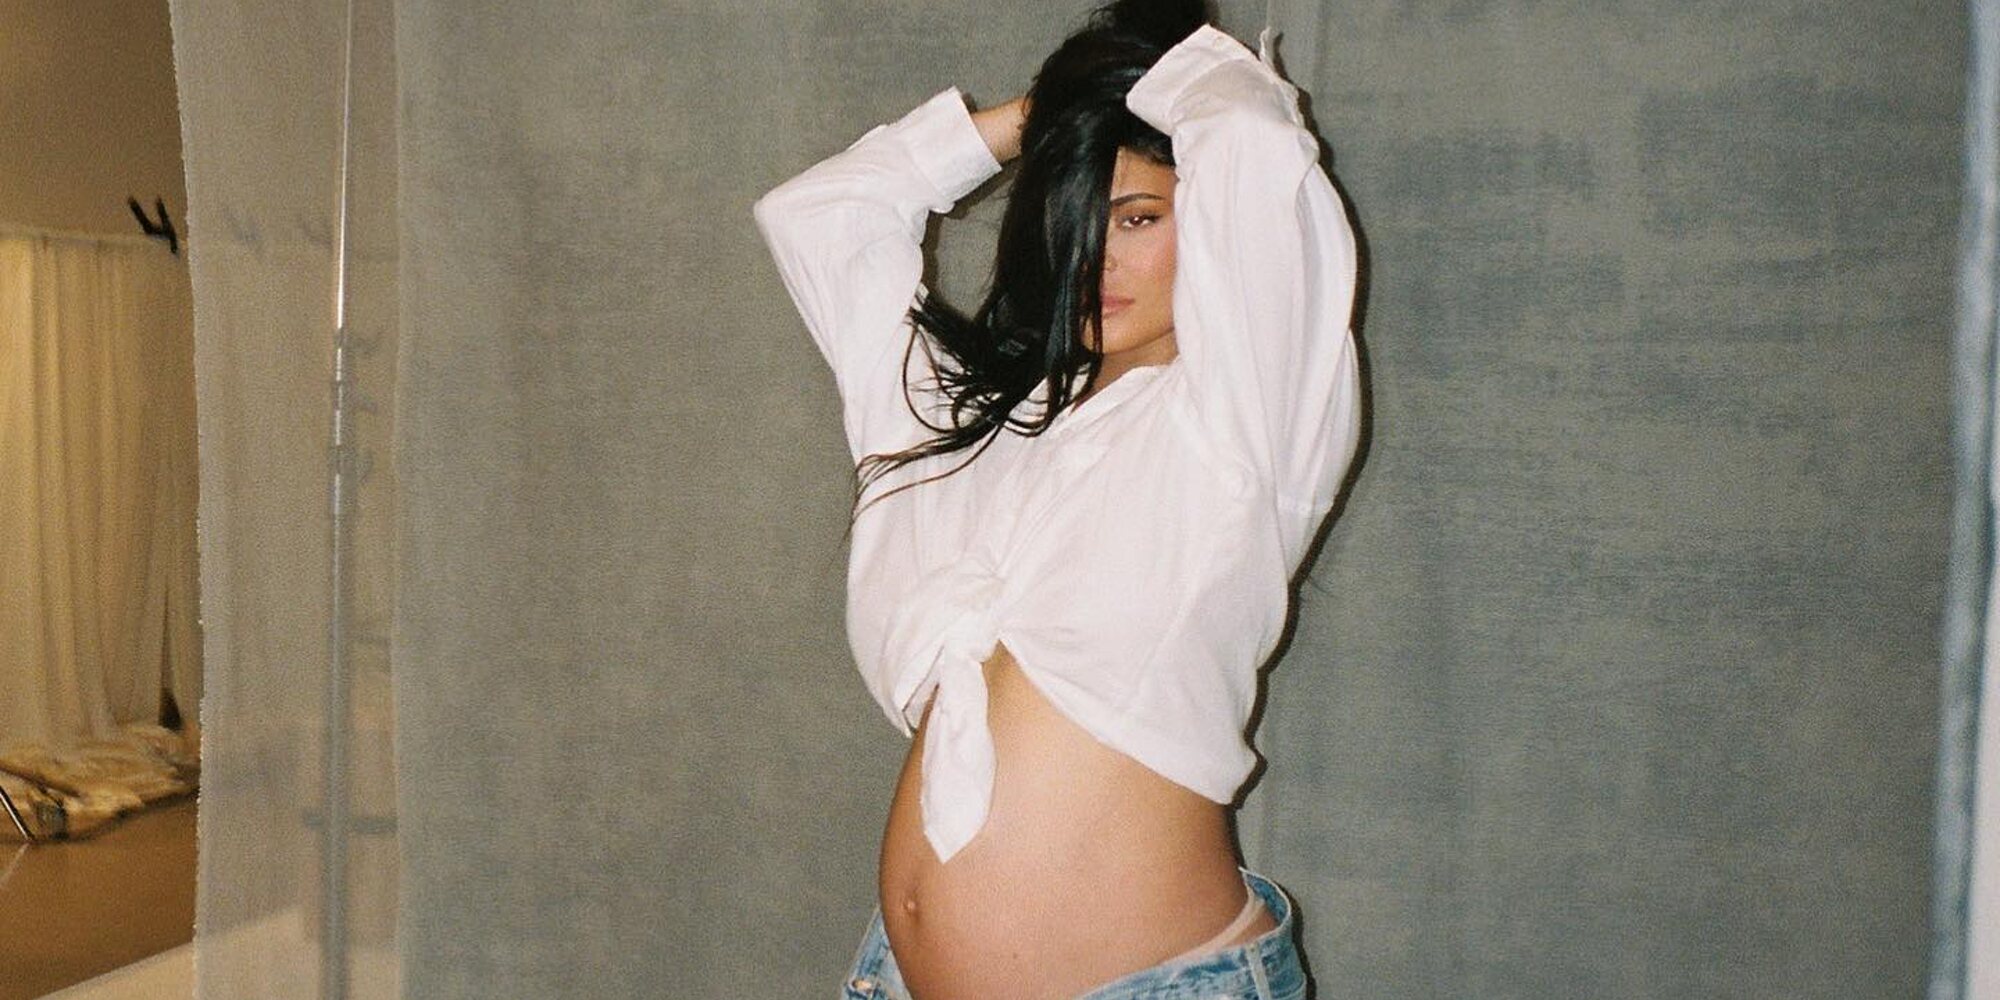 La usuaria de TikTok que sacó a la luz el embarazo de Kylie Jenner asegura que esta ya ha tenido a su segundo hijo